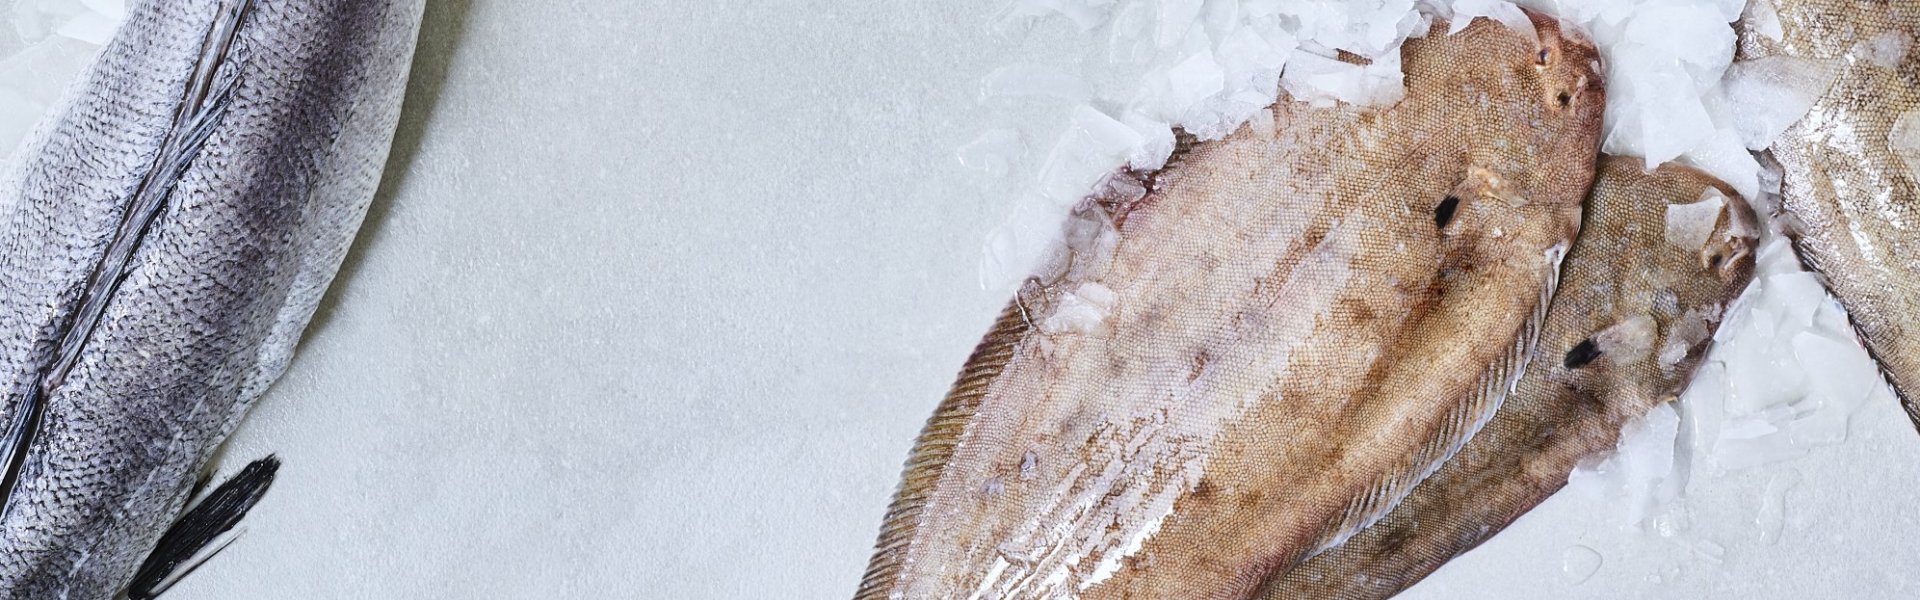 Vissen van bij ons uit de onze Noordzee. Zeetong, rog en heek liggen op ijs op tafel. 